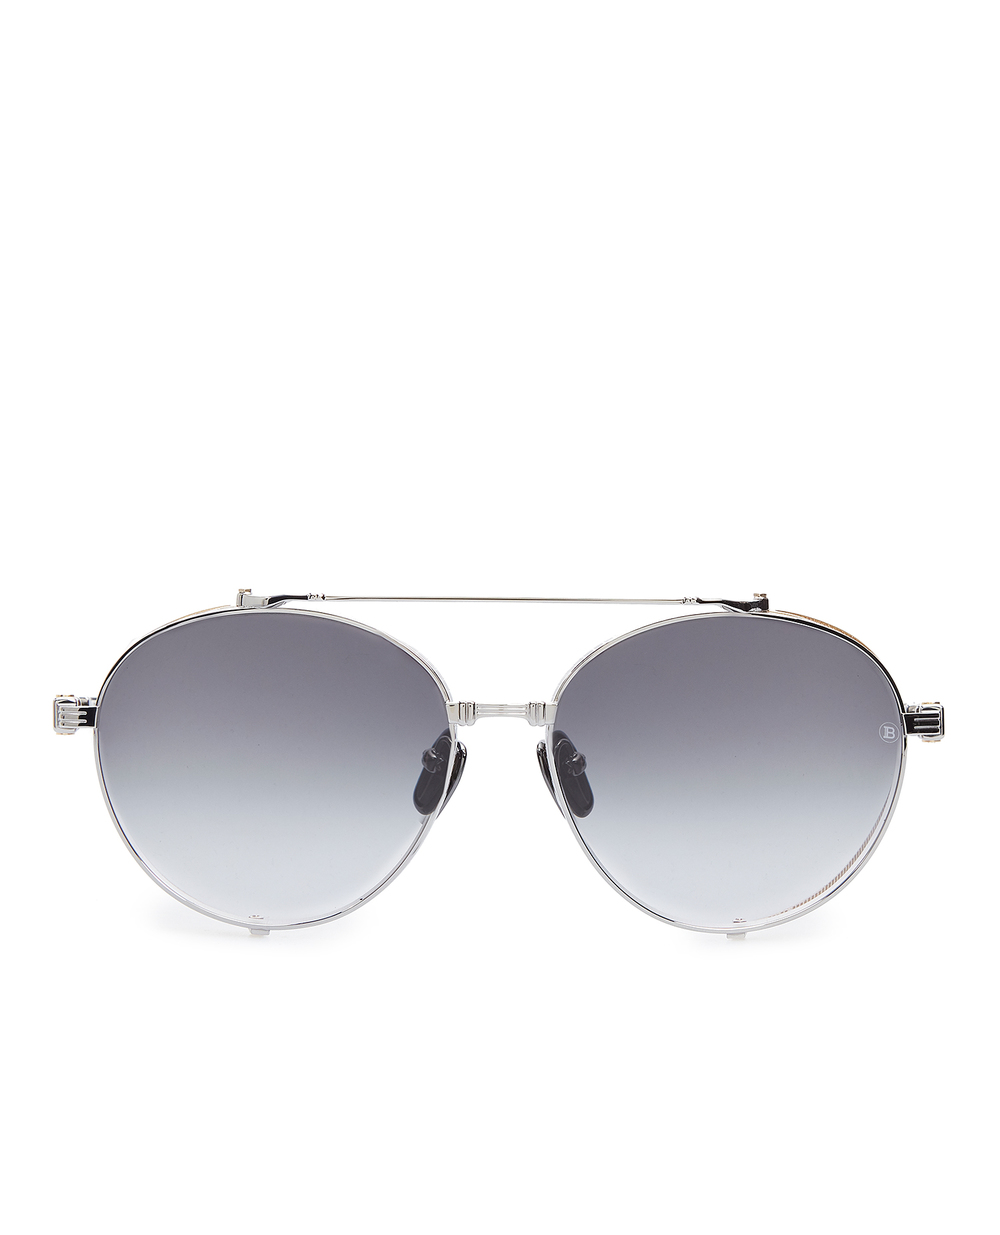 Солнцезащитные очки Balmain BPS-111B-60, серебряный цвет • Купить в интернет-магазине Kameron